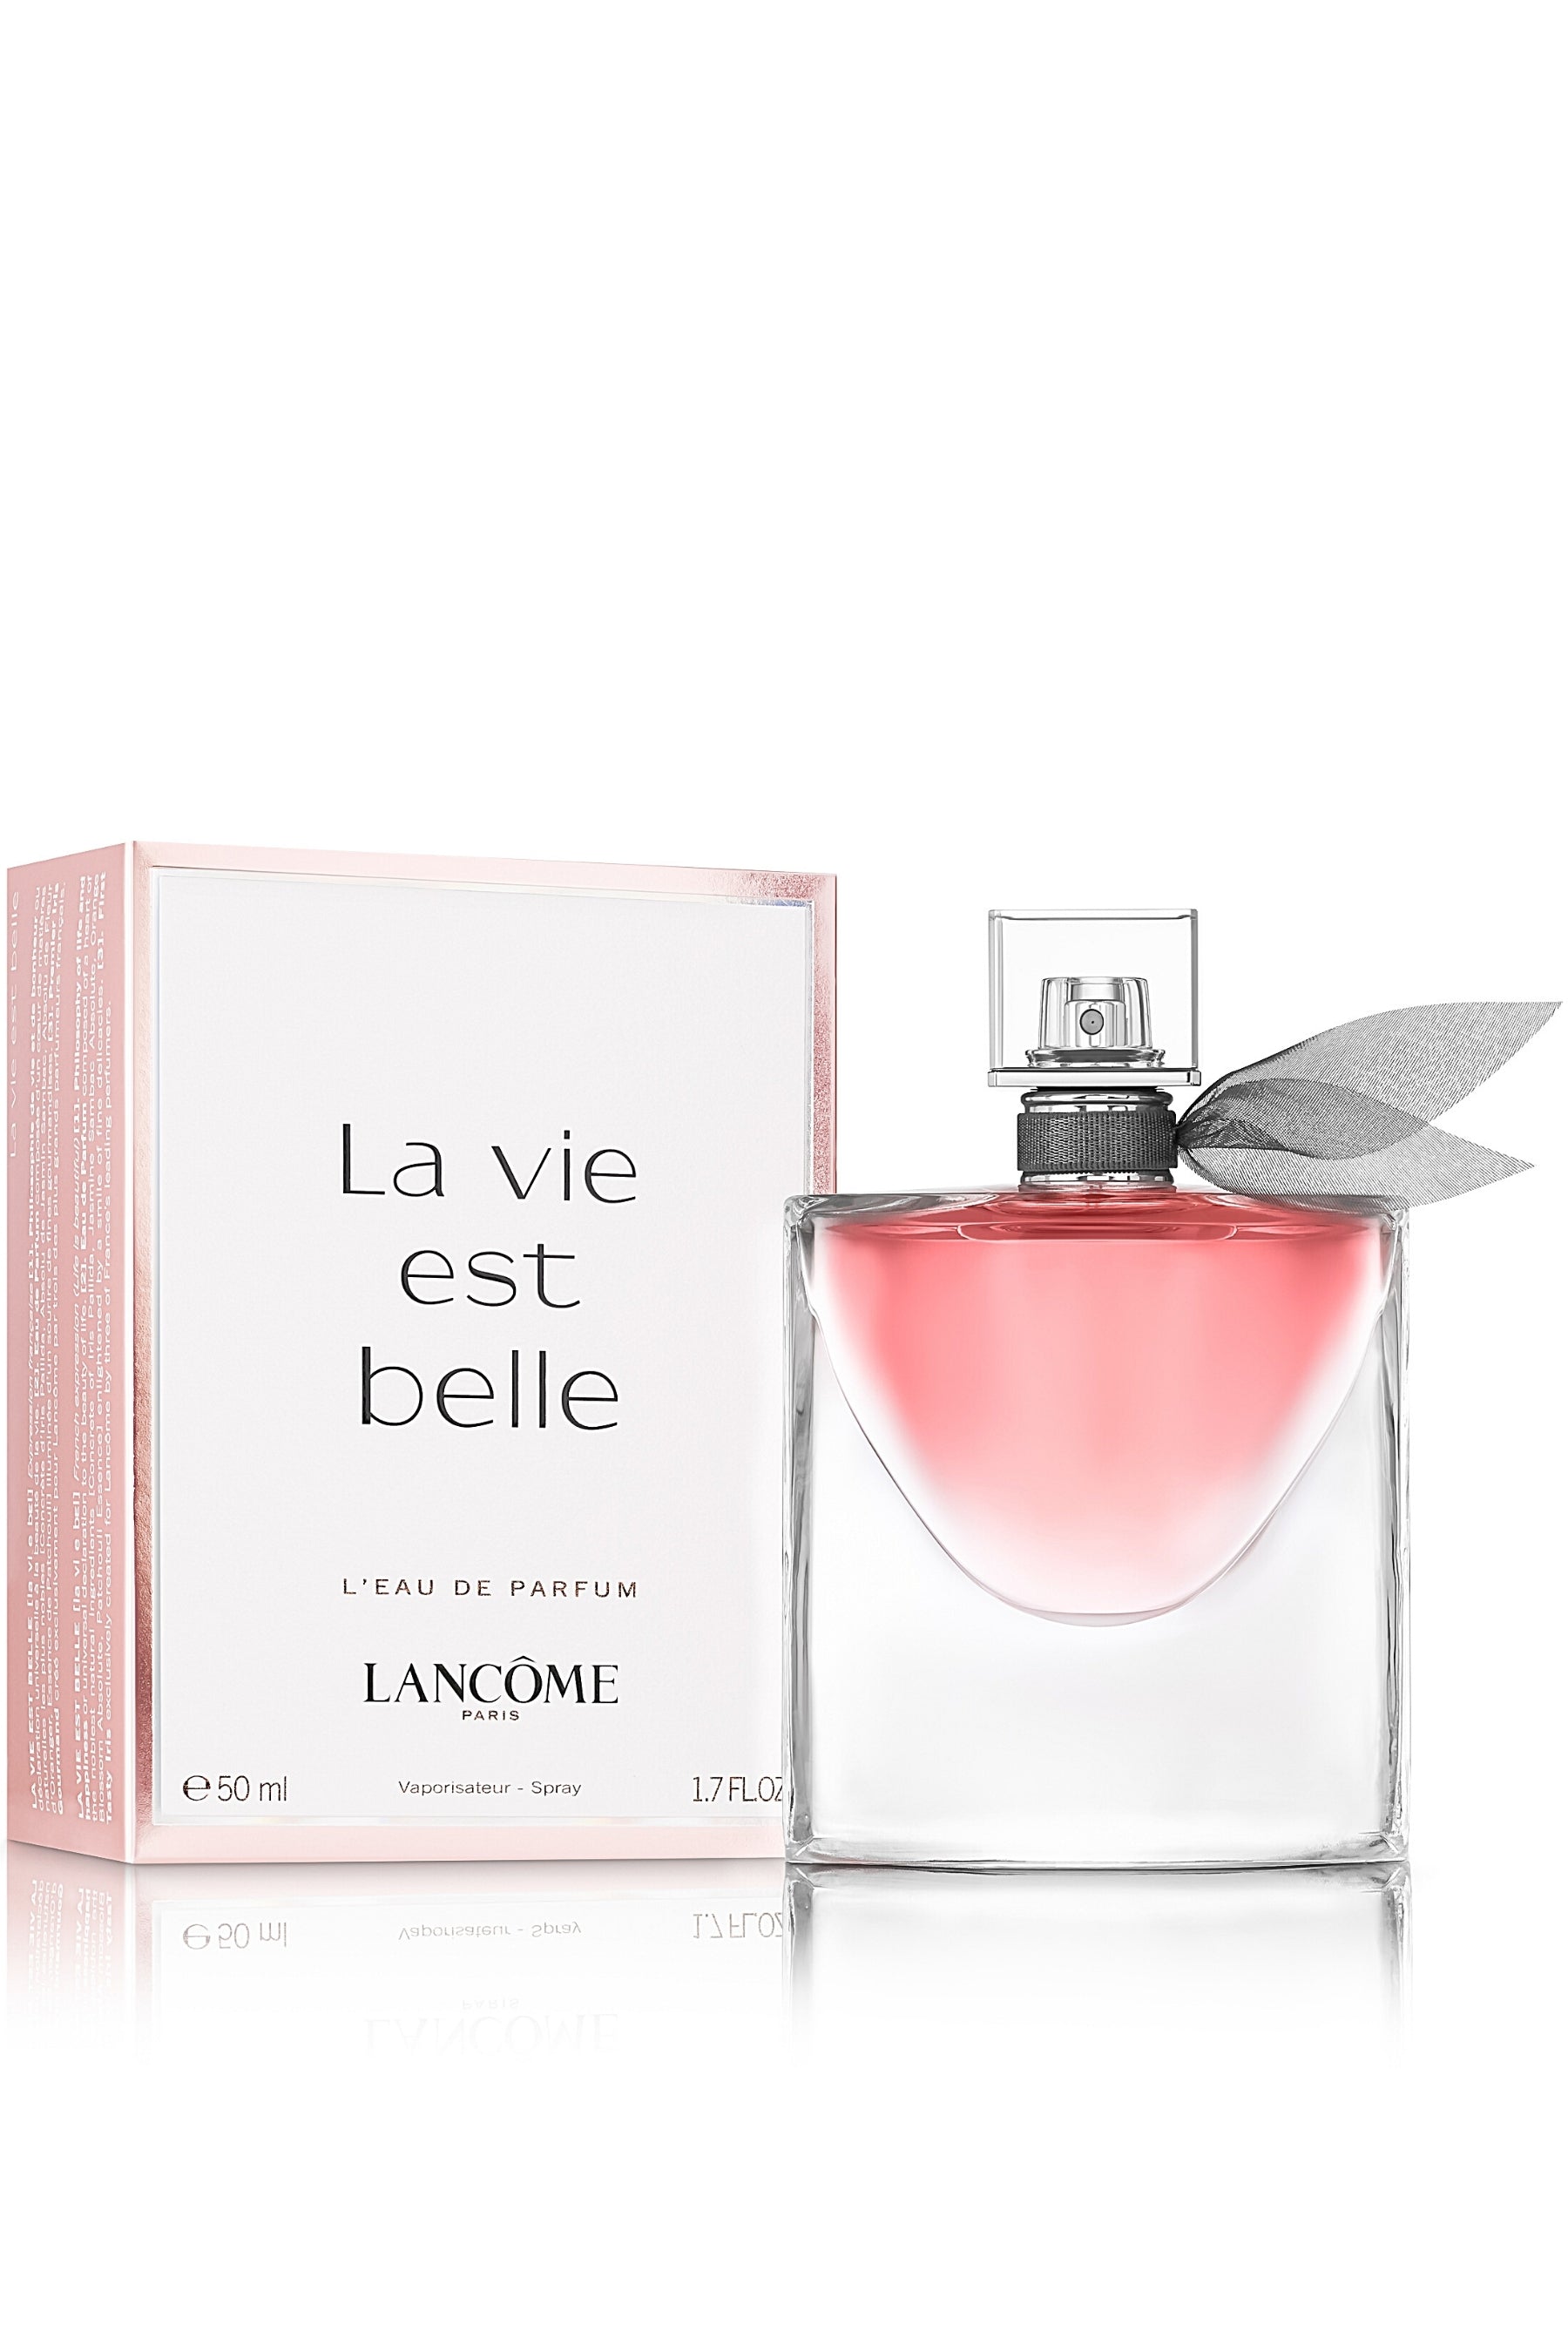 La Vie est Belle, Eau de Parfum - Lancôme